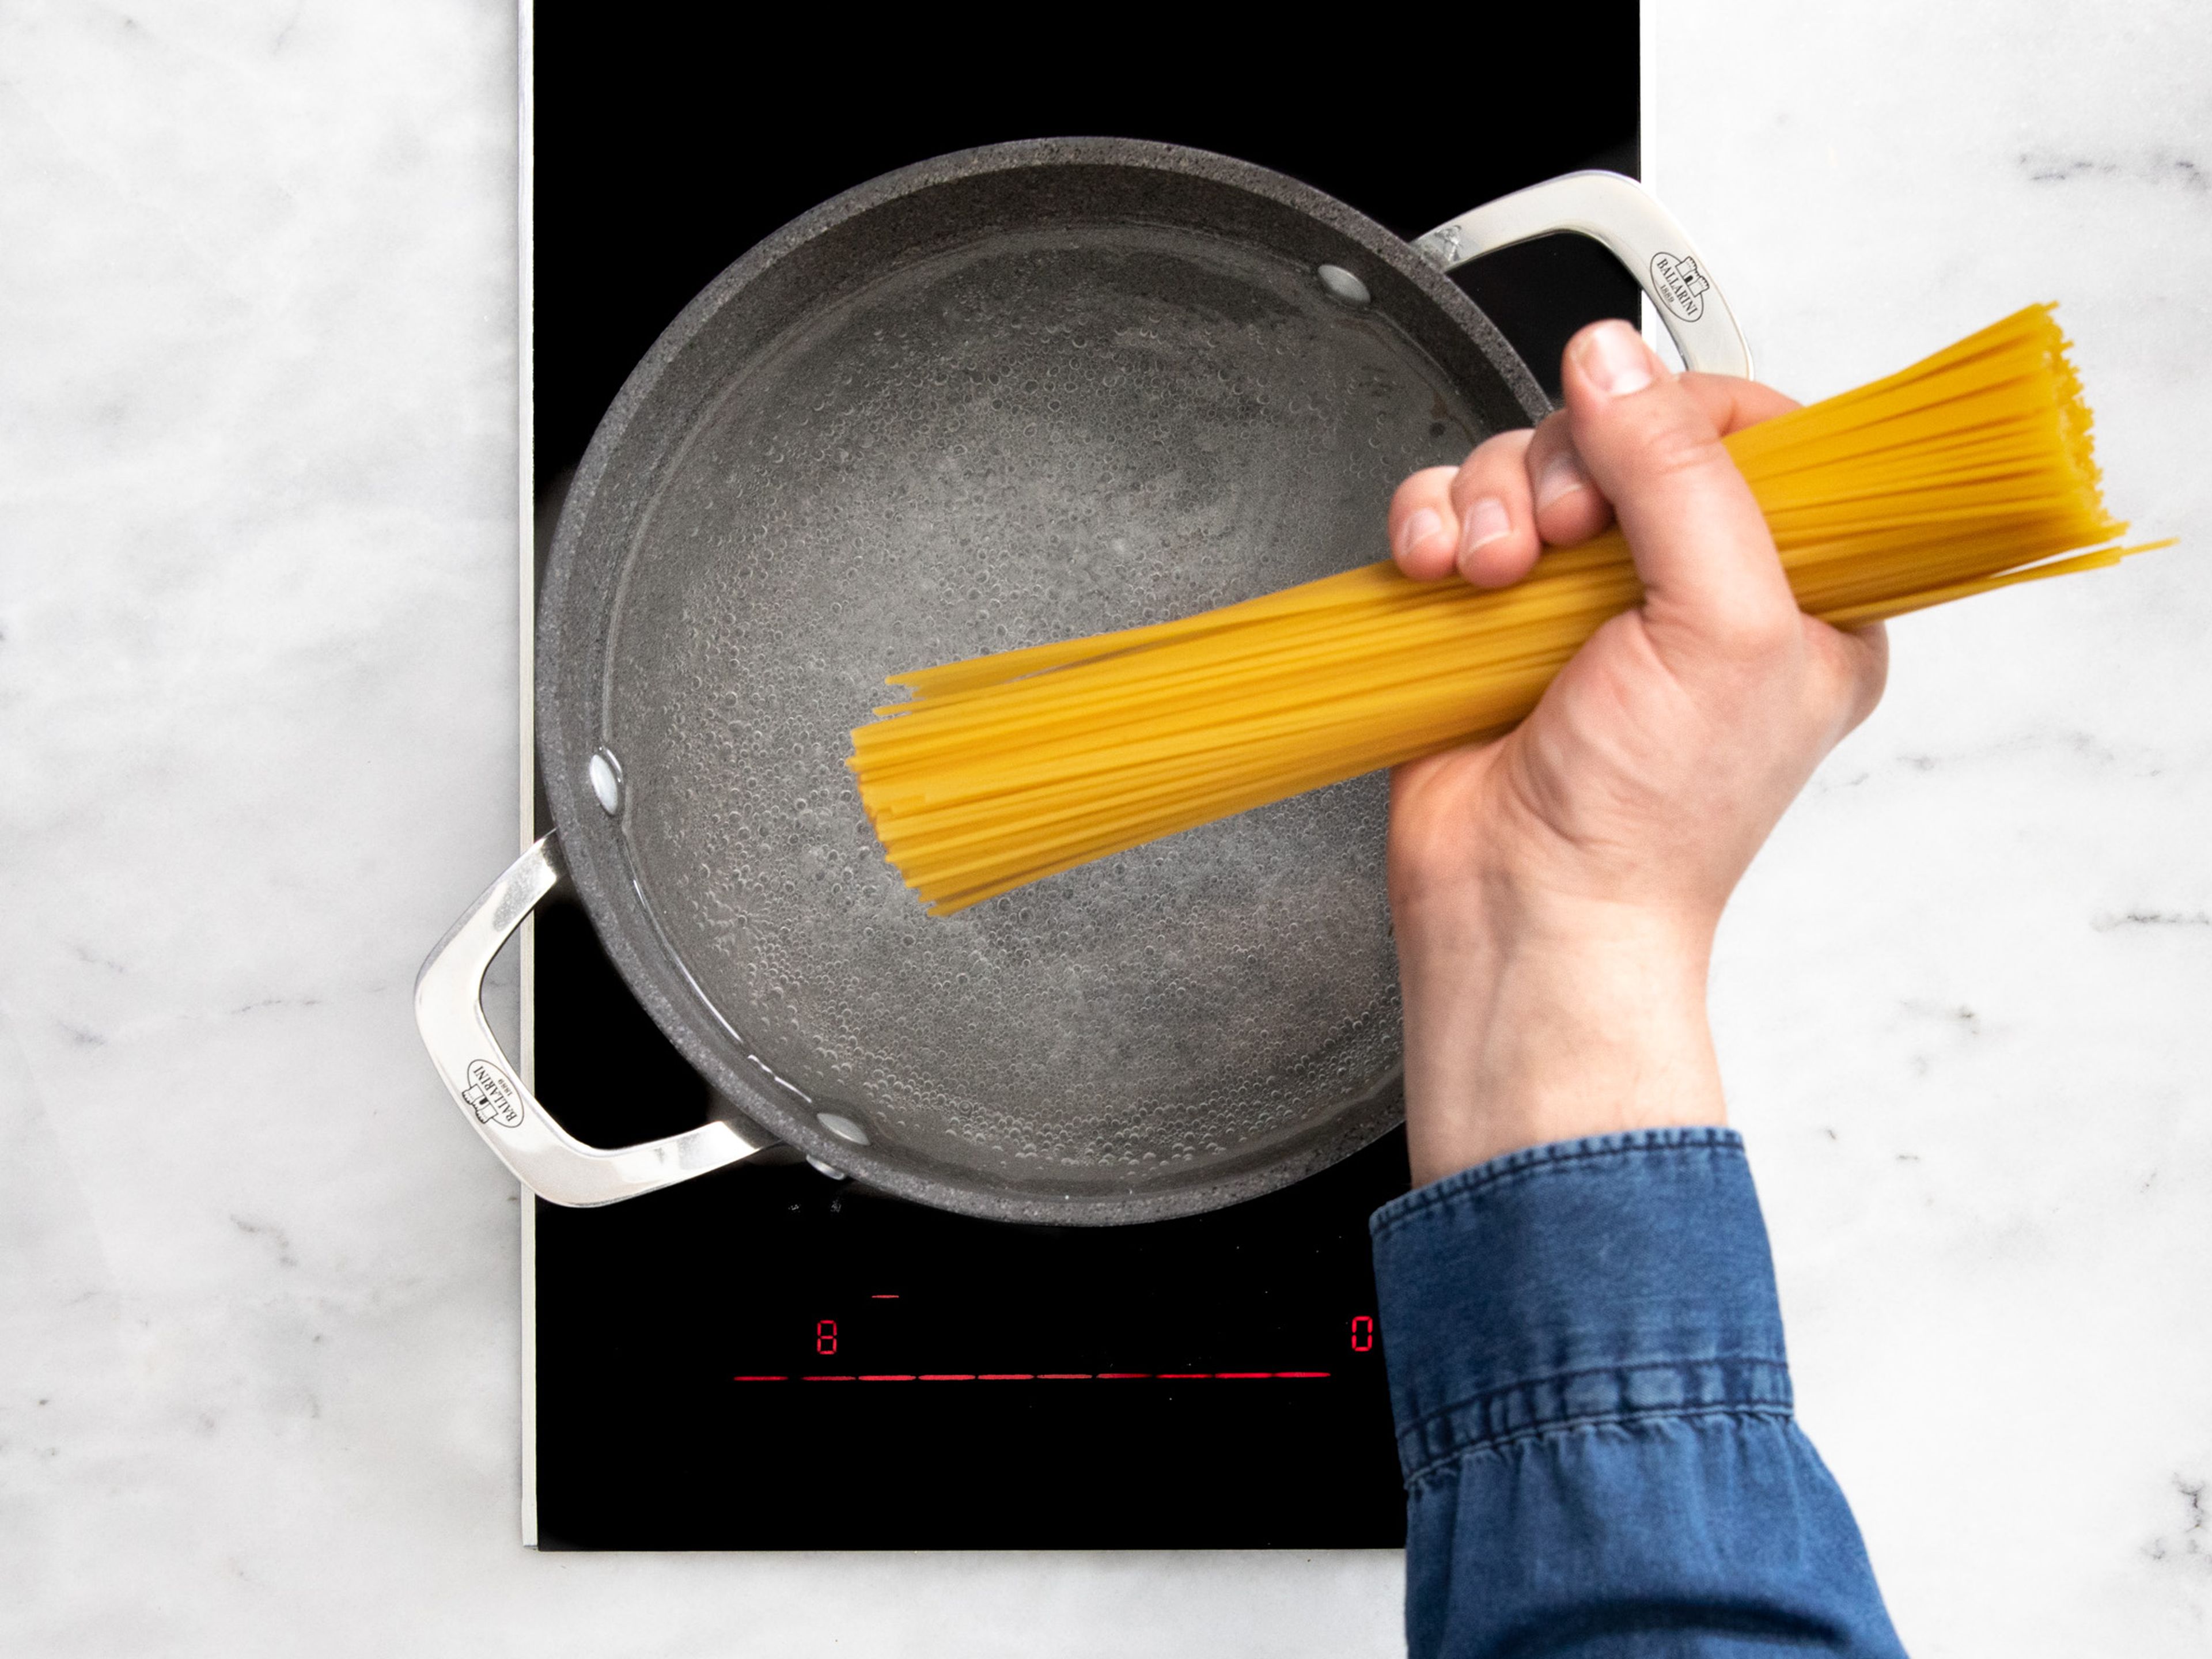 Einen Topf mit Wasser auf mittlerer Stufe erhitzen. Sobald das Wasser kocht, Salz dazugeben und Spaghetti nach Packungsanweisung kochen.